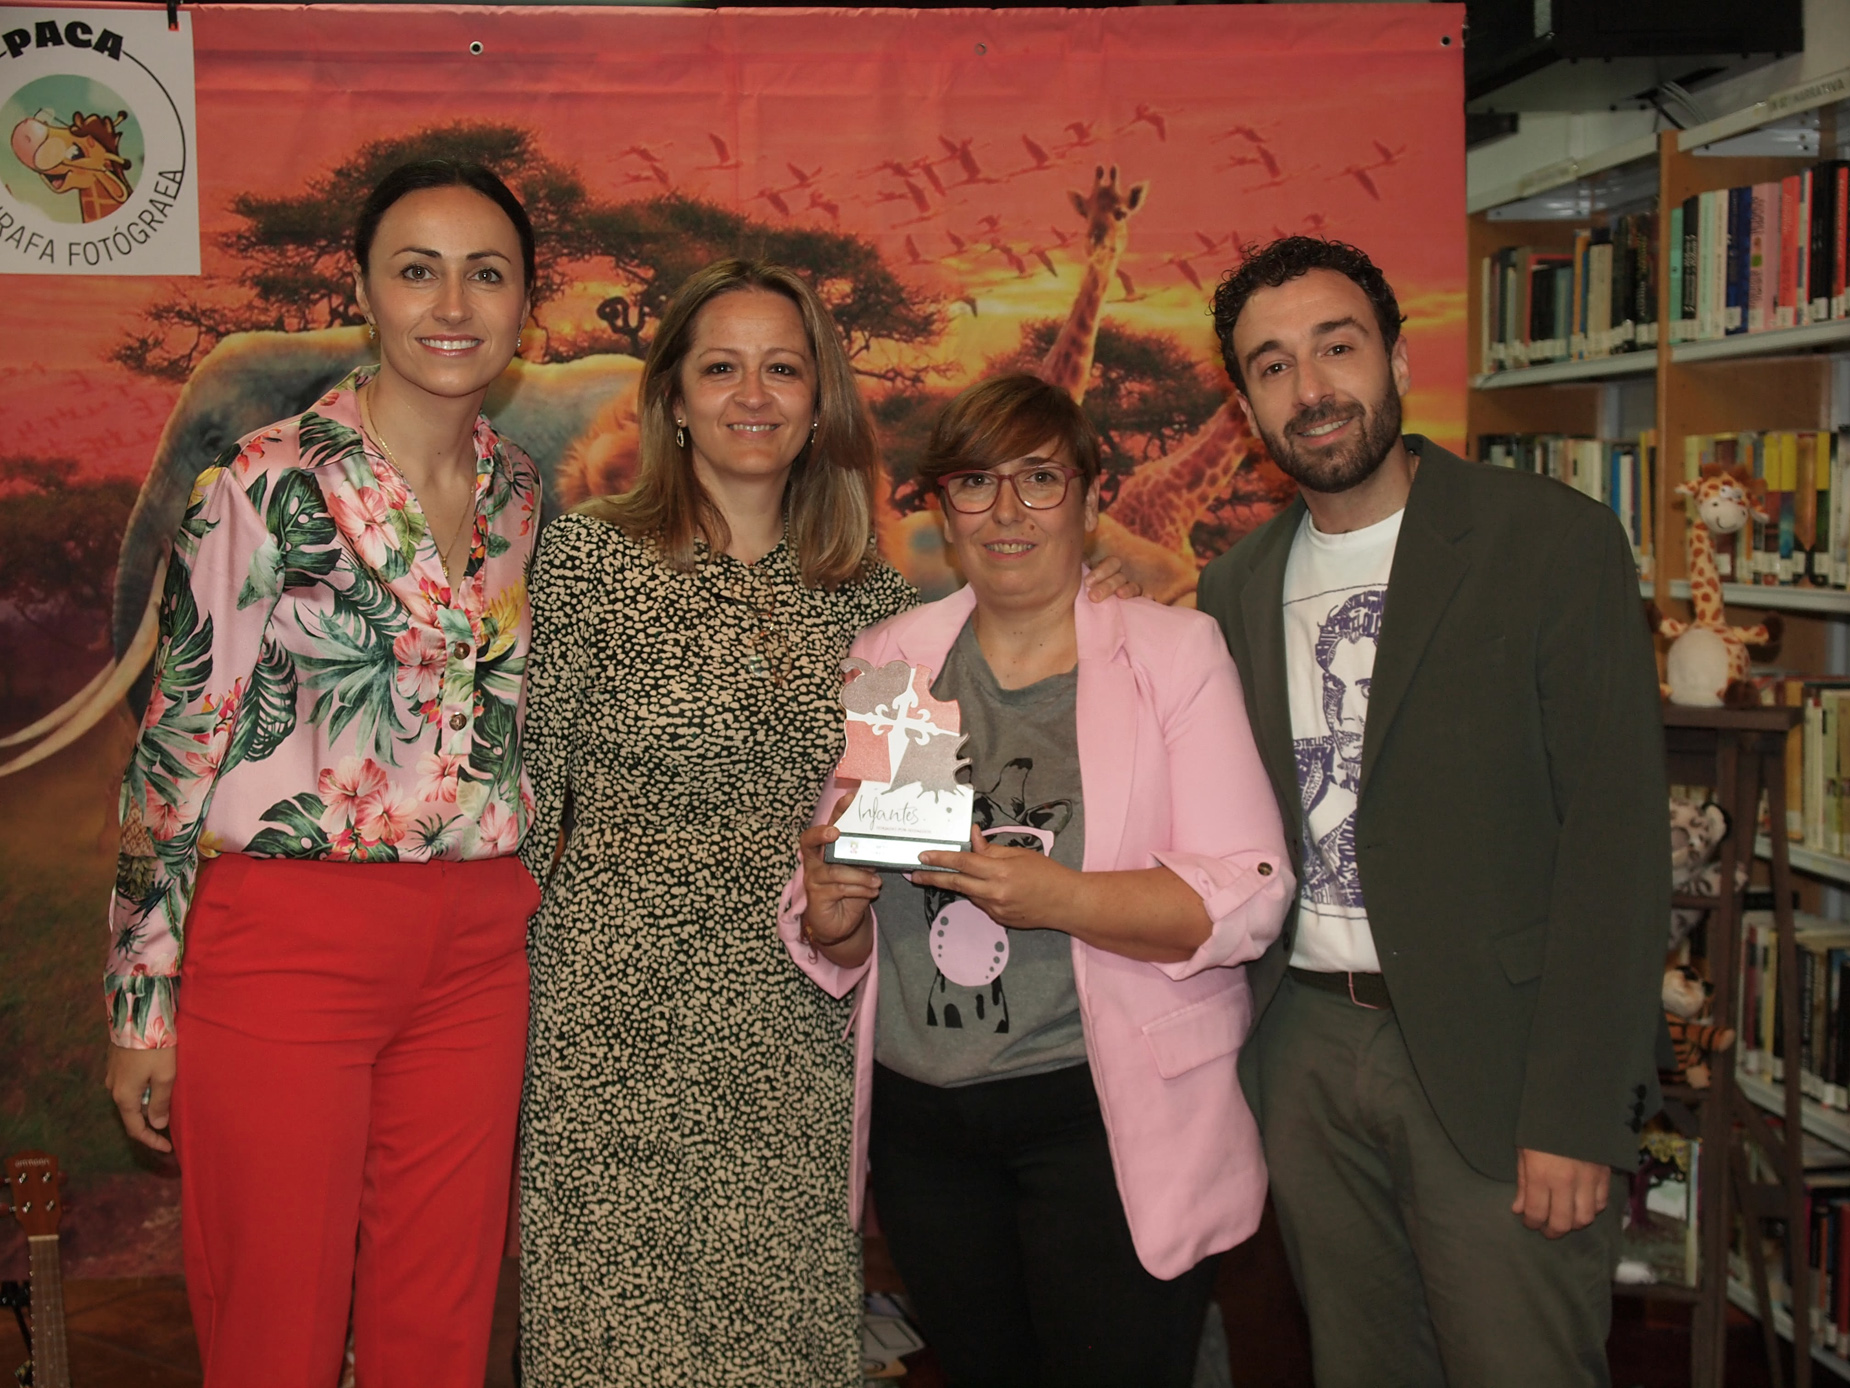 La Biblioteca Municipal Quevedo acogió la presentación del cuento ilustrado ‘Paca, la jirafa fotógrafa’ de Lourdes Moncayo